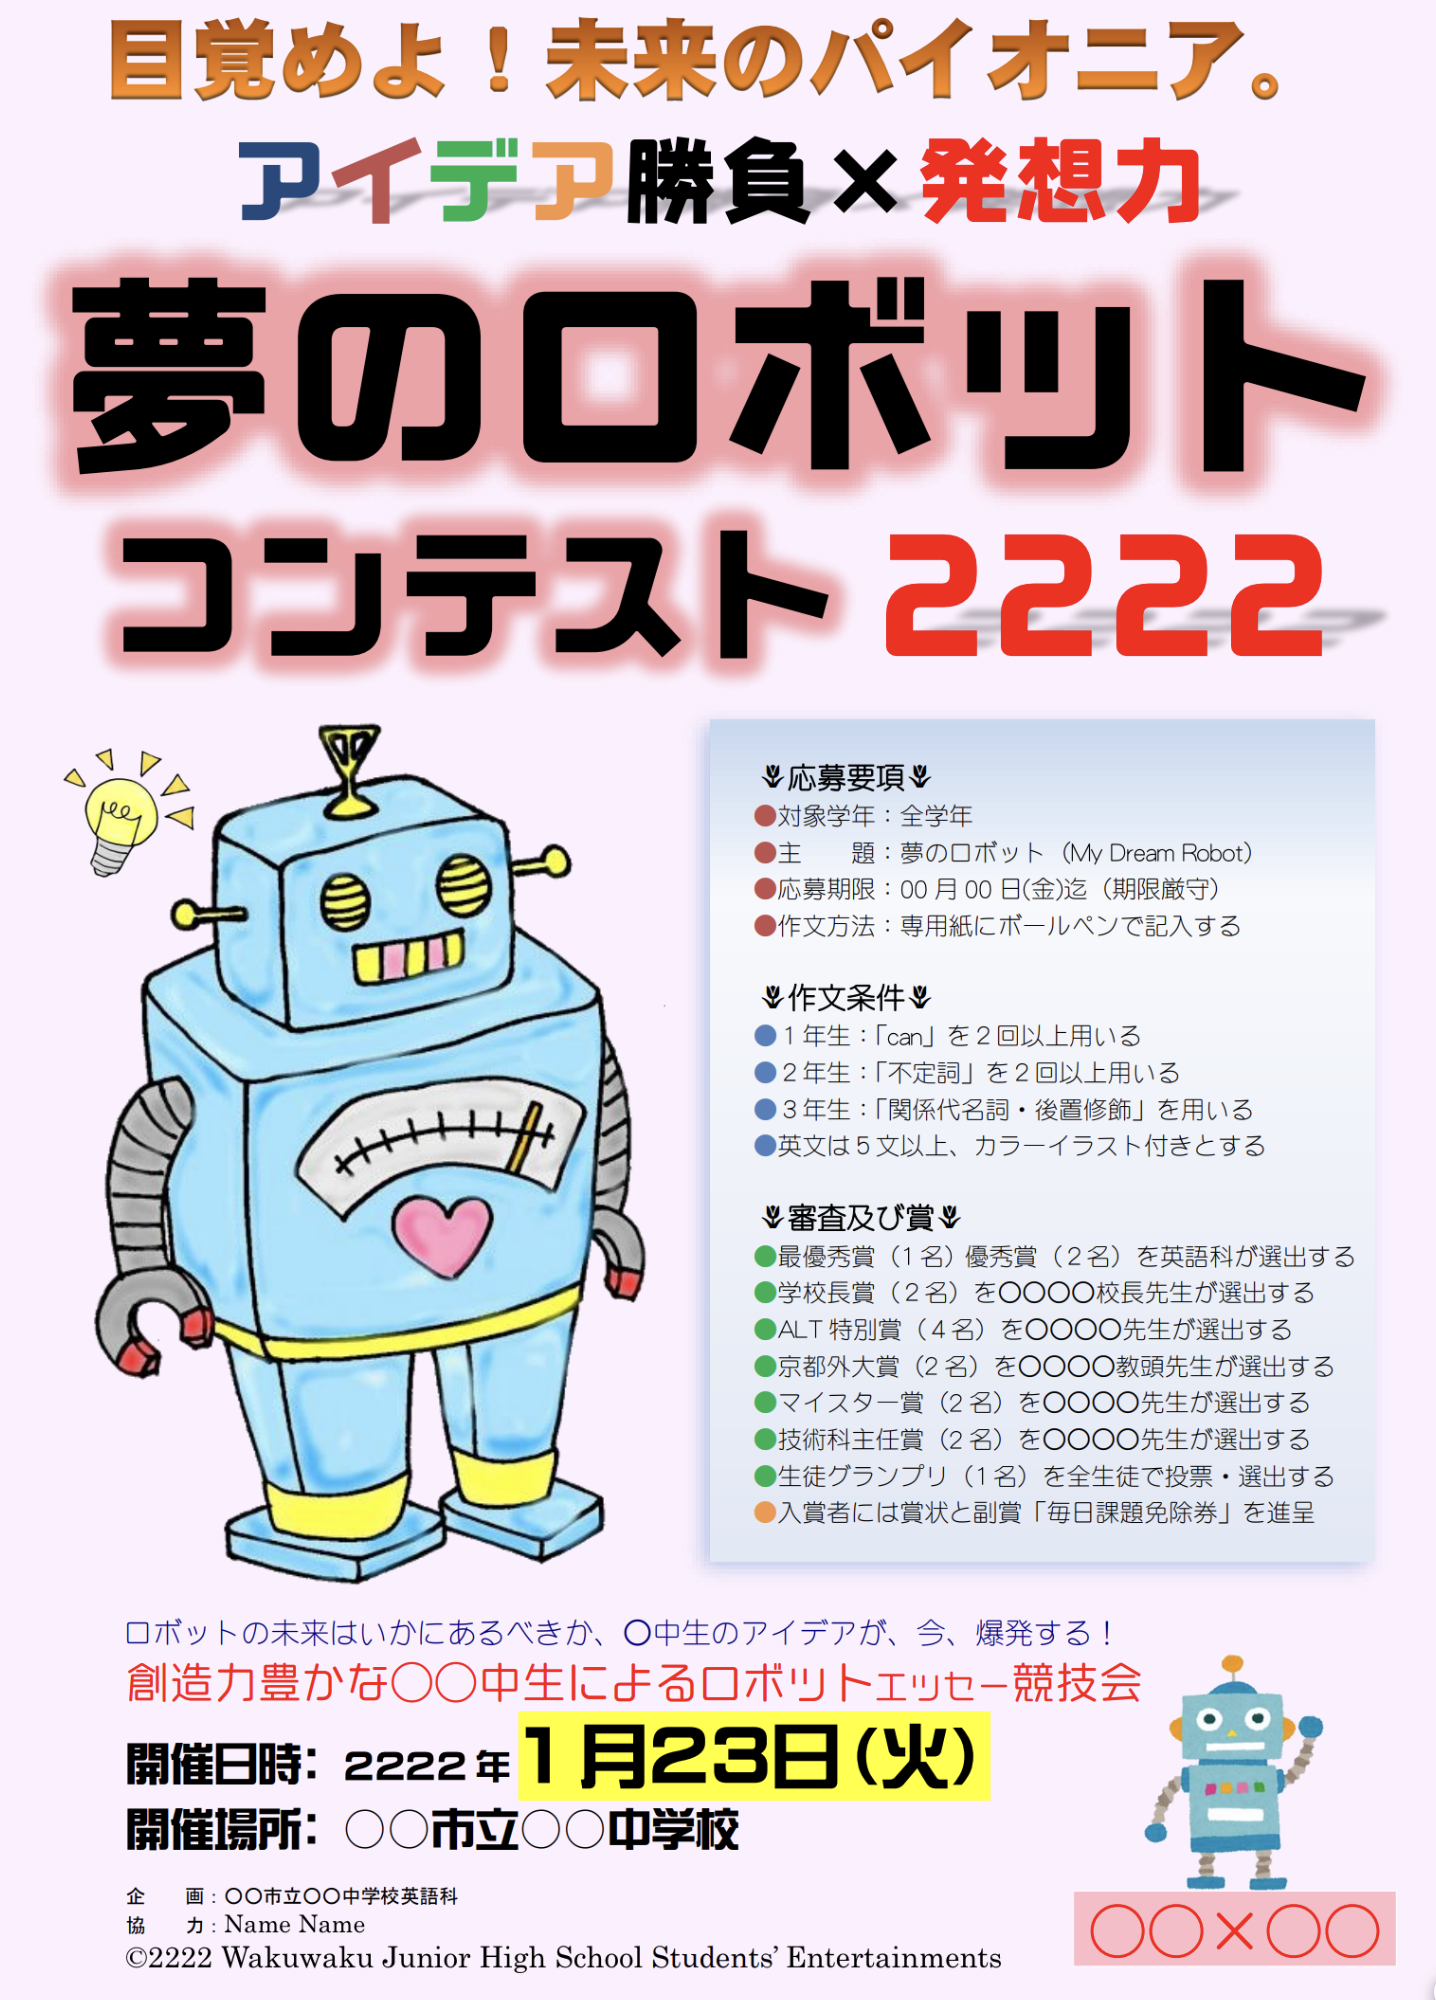 「夢のロボット」エッセー・コンテストのポスター画像